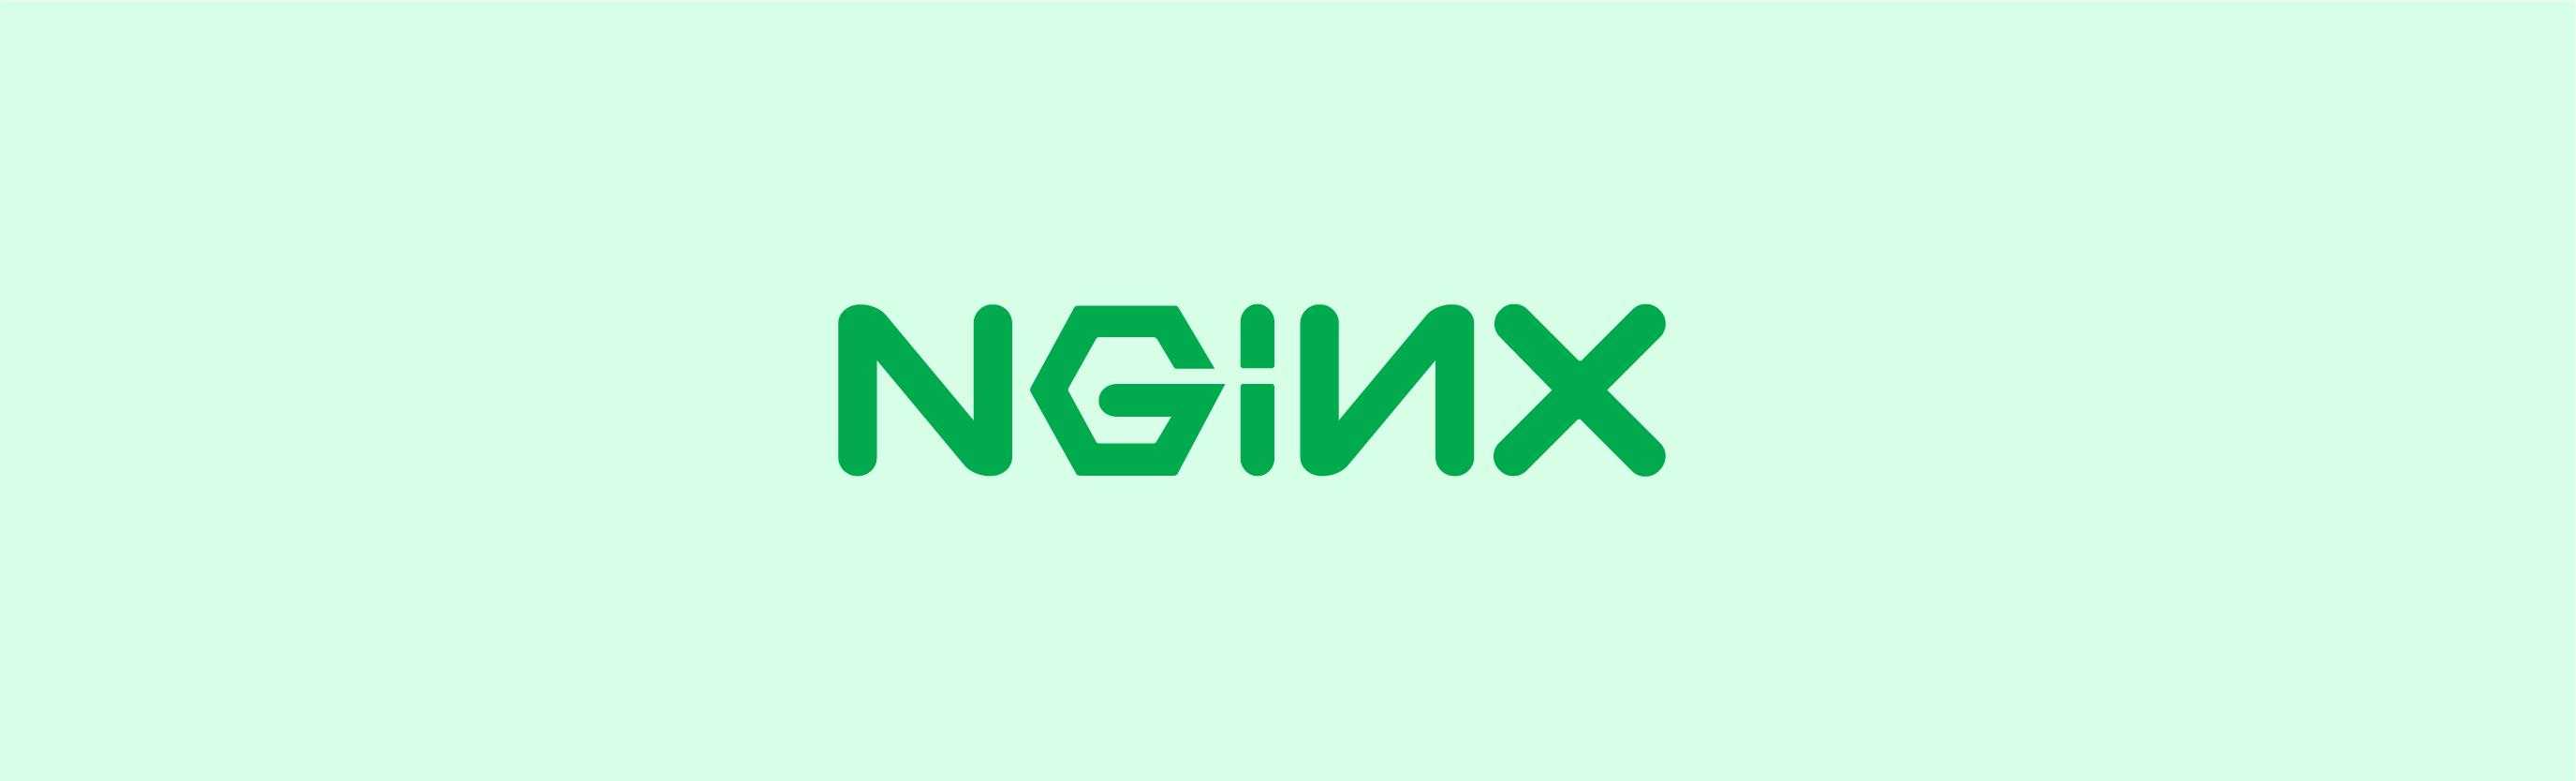 阿里面试题 | Nginx 所使用的 epoll 模型是什么？